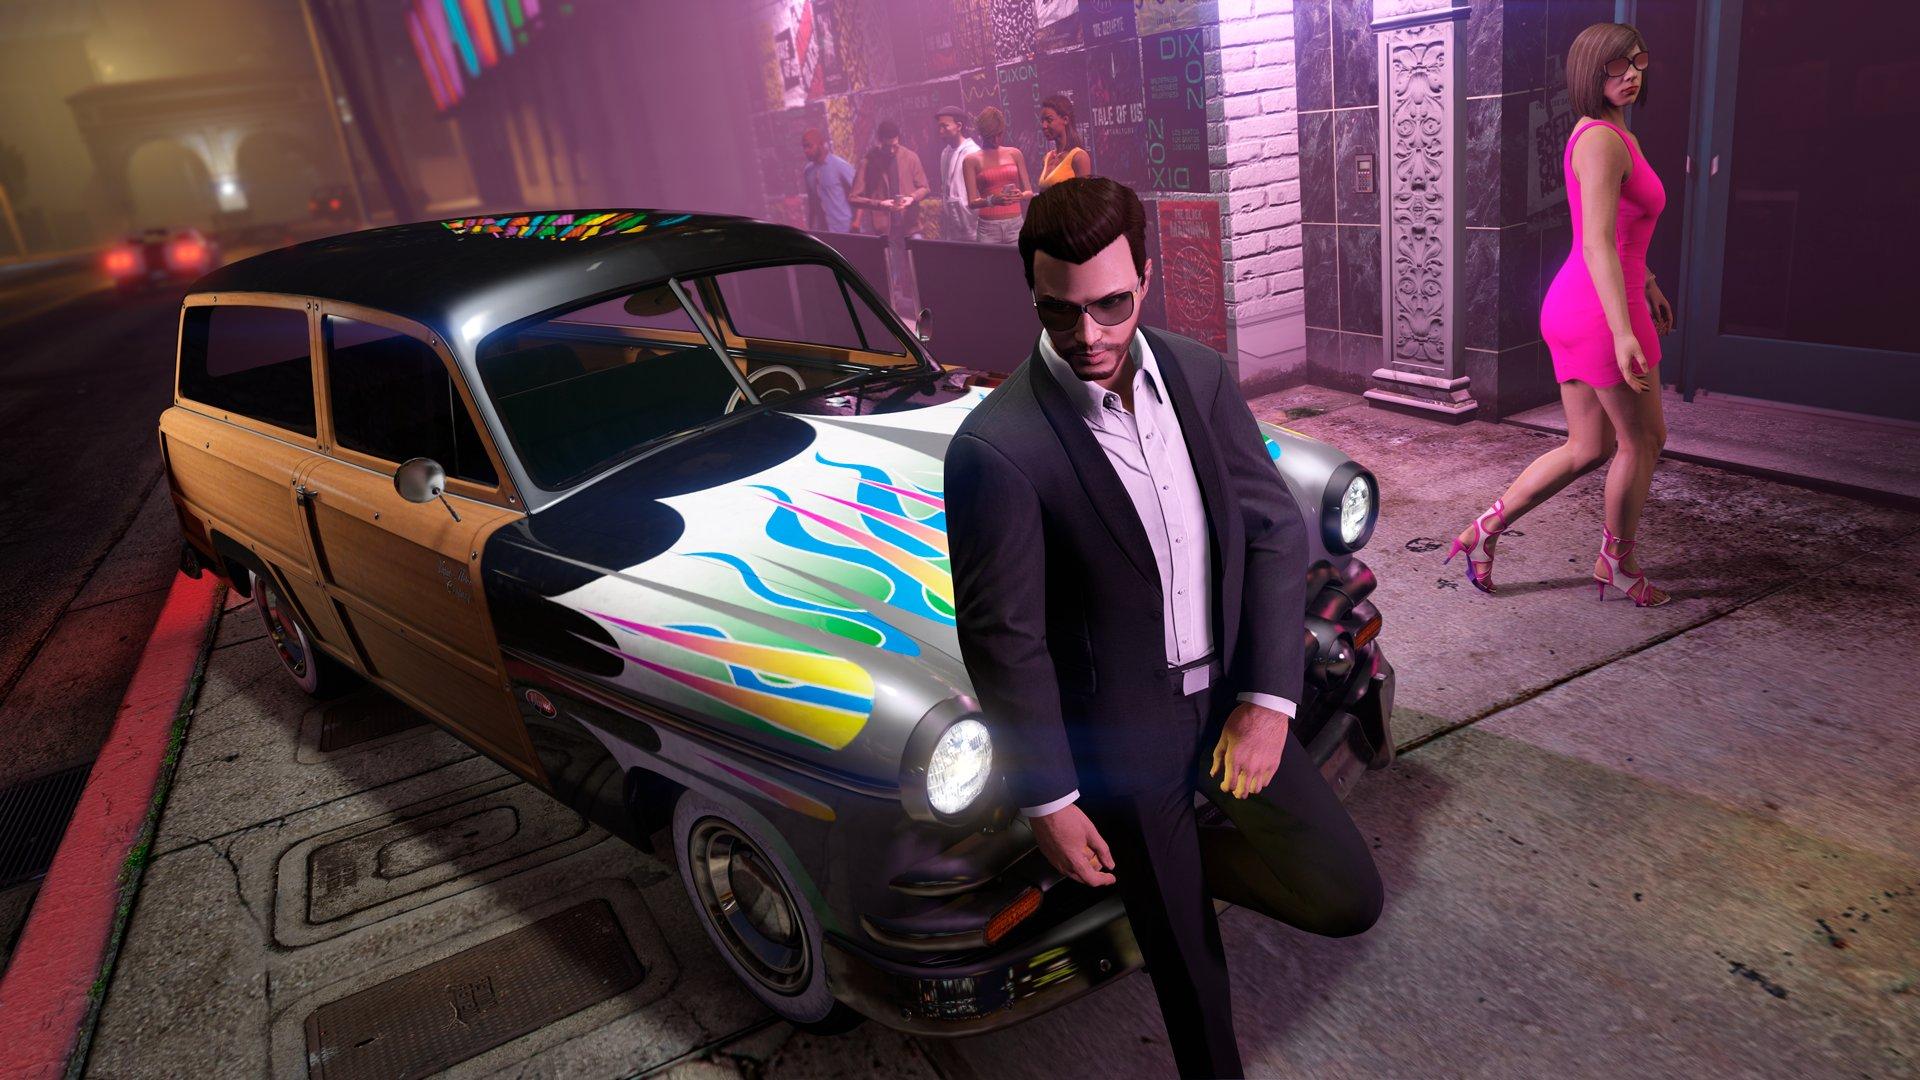 Ein Mann lehnt in „GTA Online“ an einem Auto mit Regenbogenflammen, während eine Frau in einem rosa Kleid und High Heels vorbeigeht.